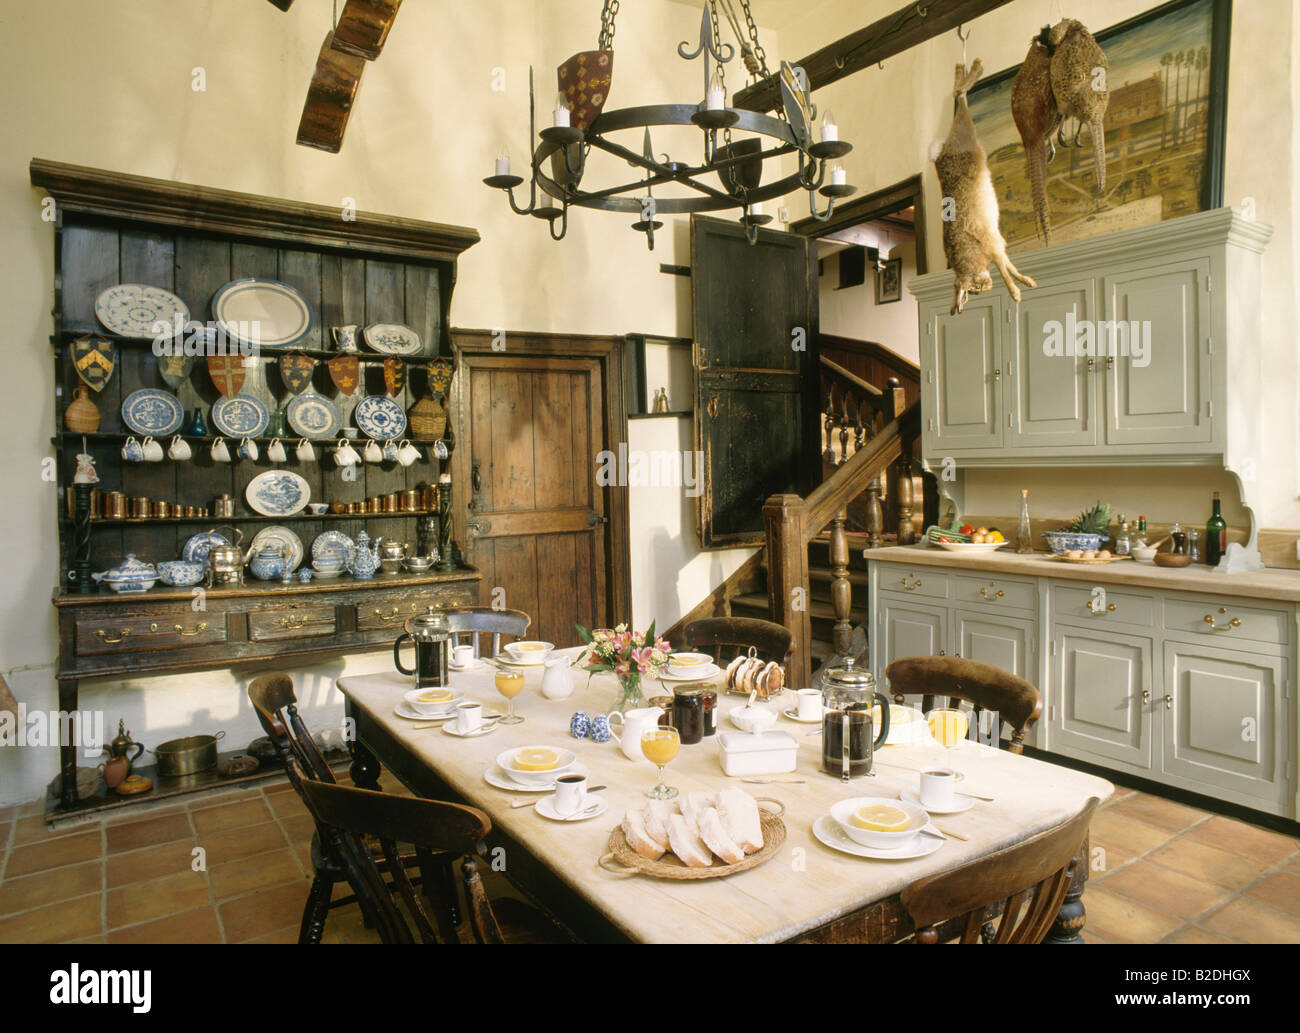 Tisch für Frühstück in großen alten altmodischen Küche Stockfoto